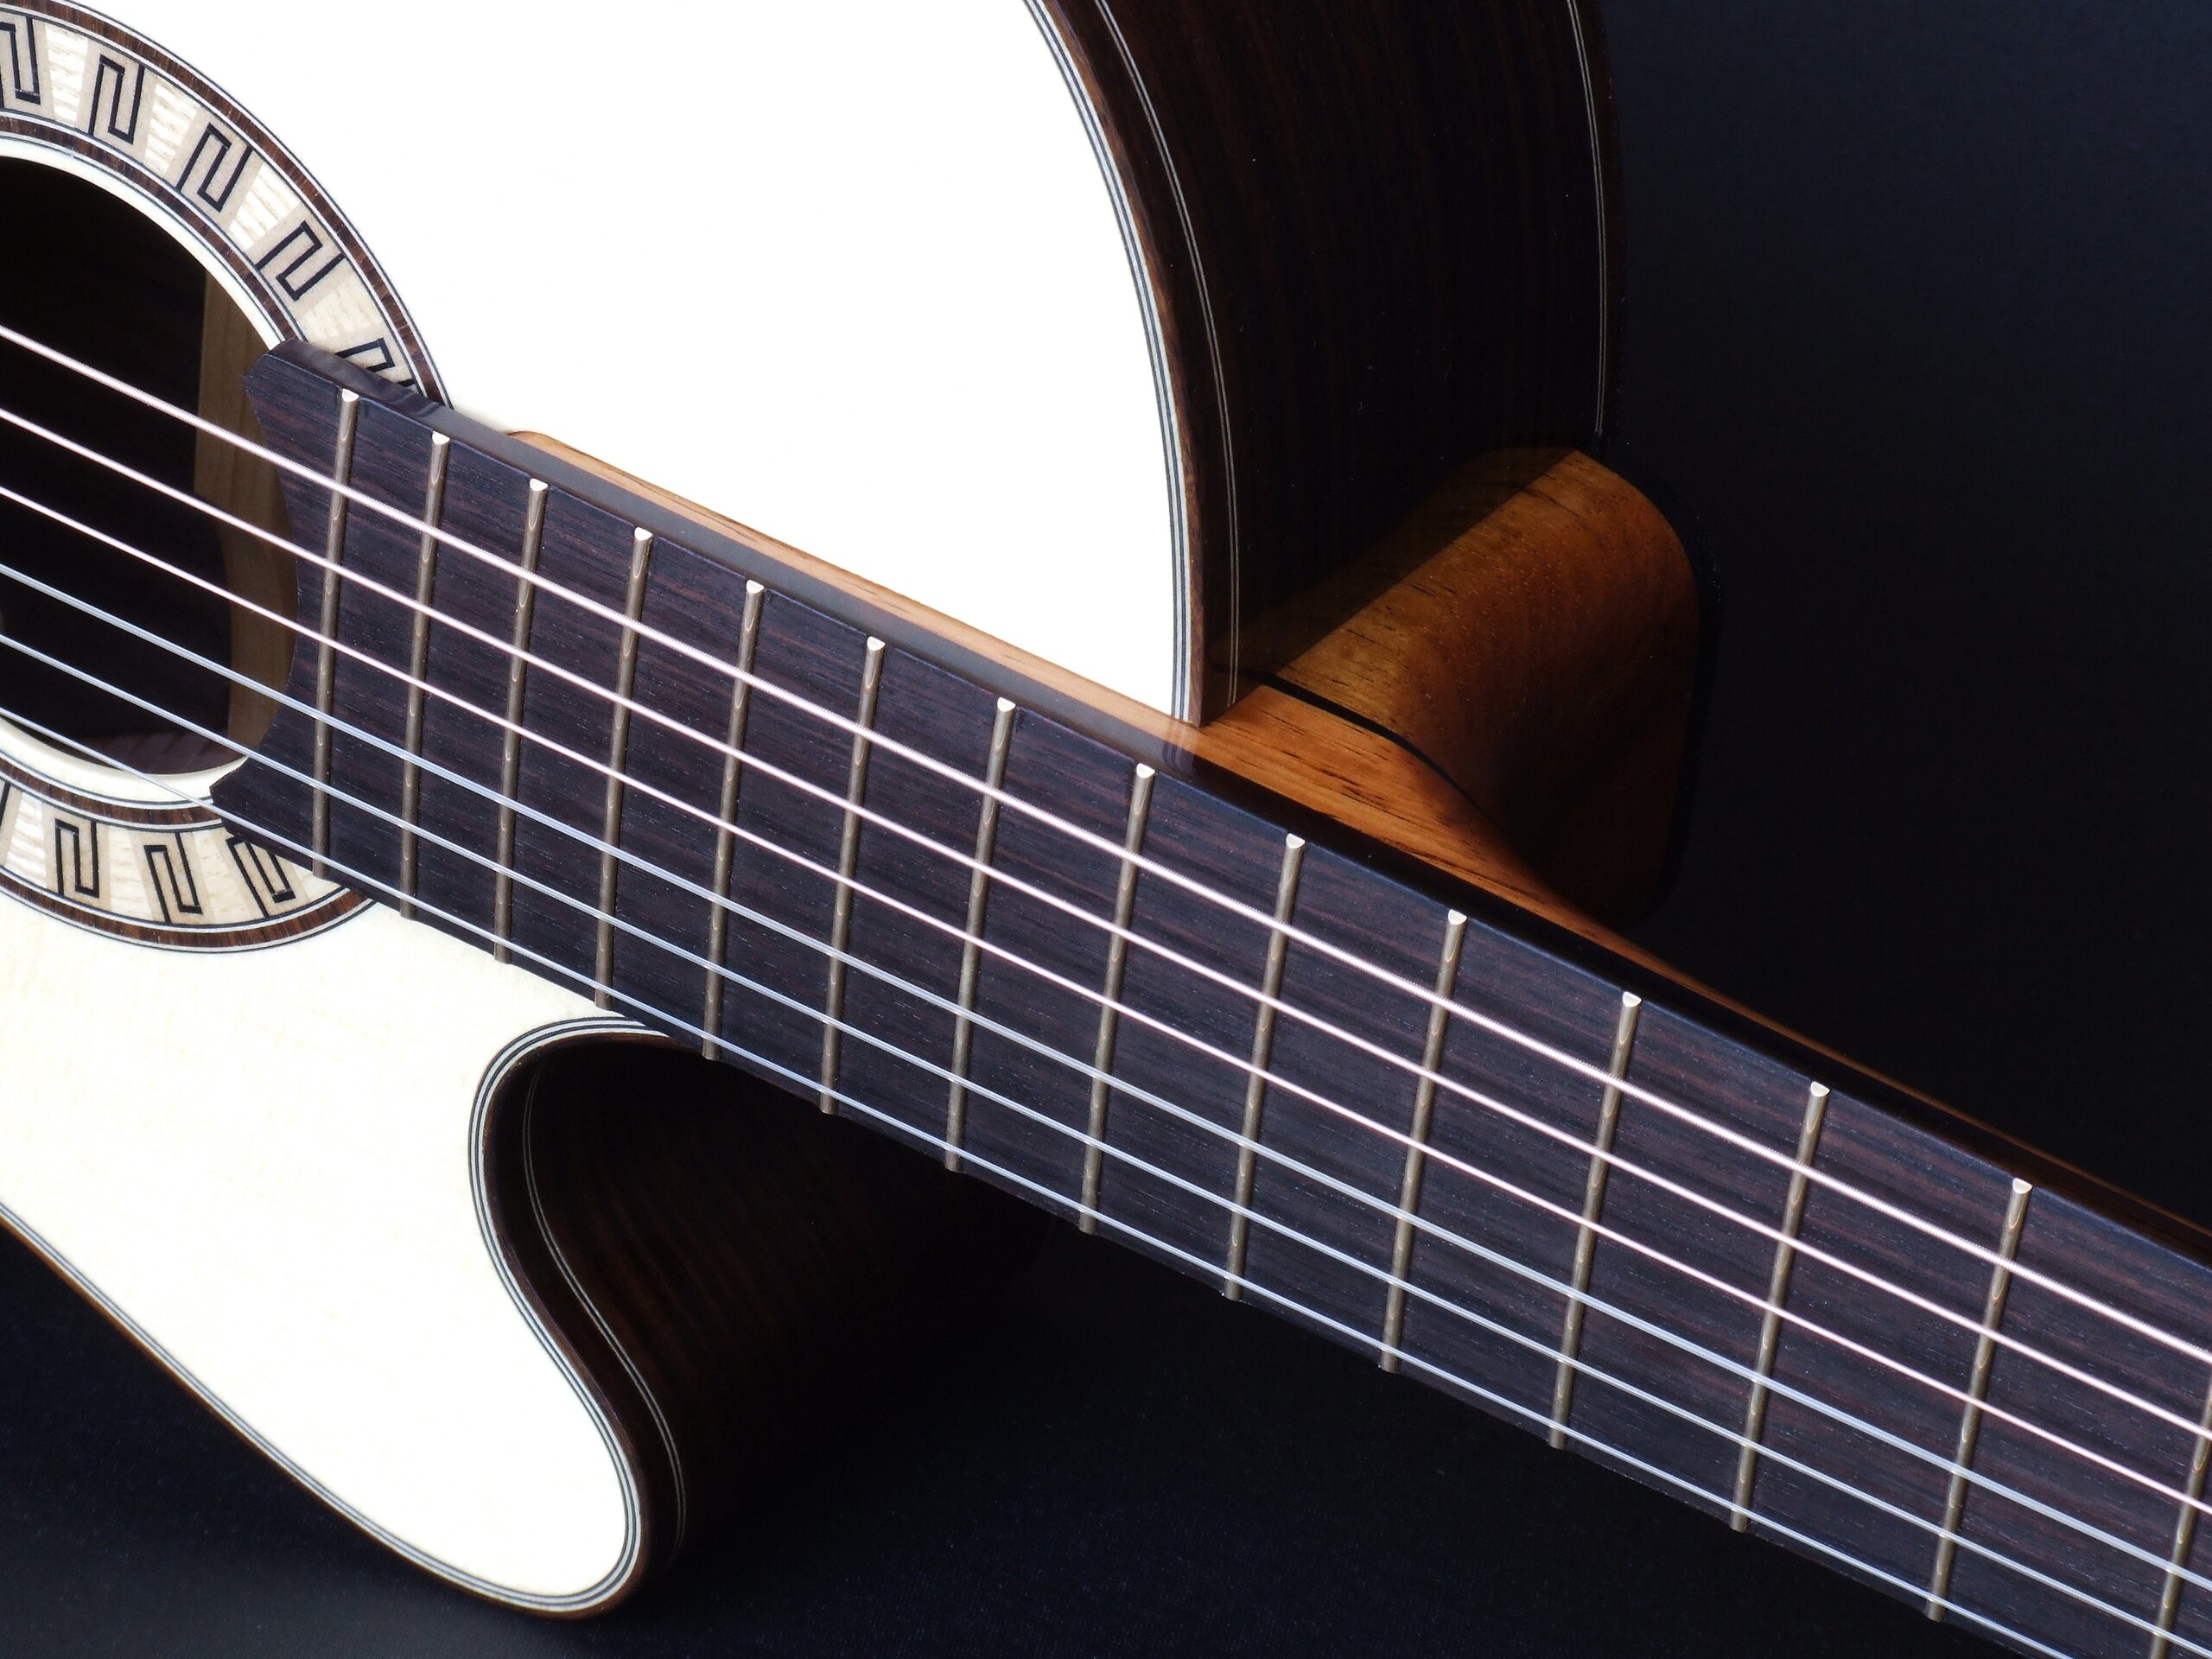 Custom guitars. Tilt neck joint on a cutaway classical guitar